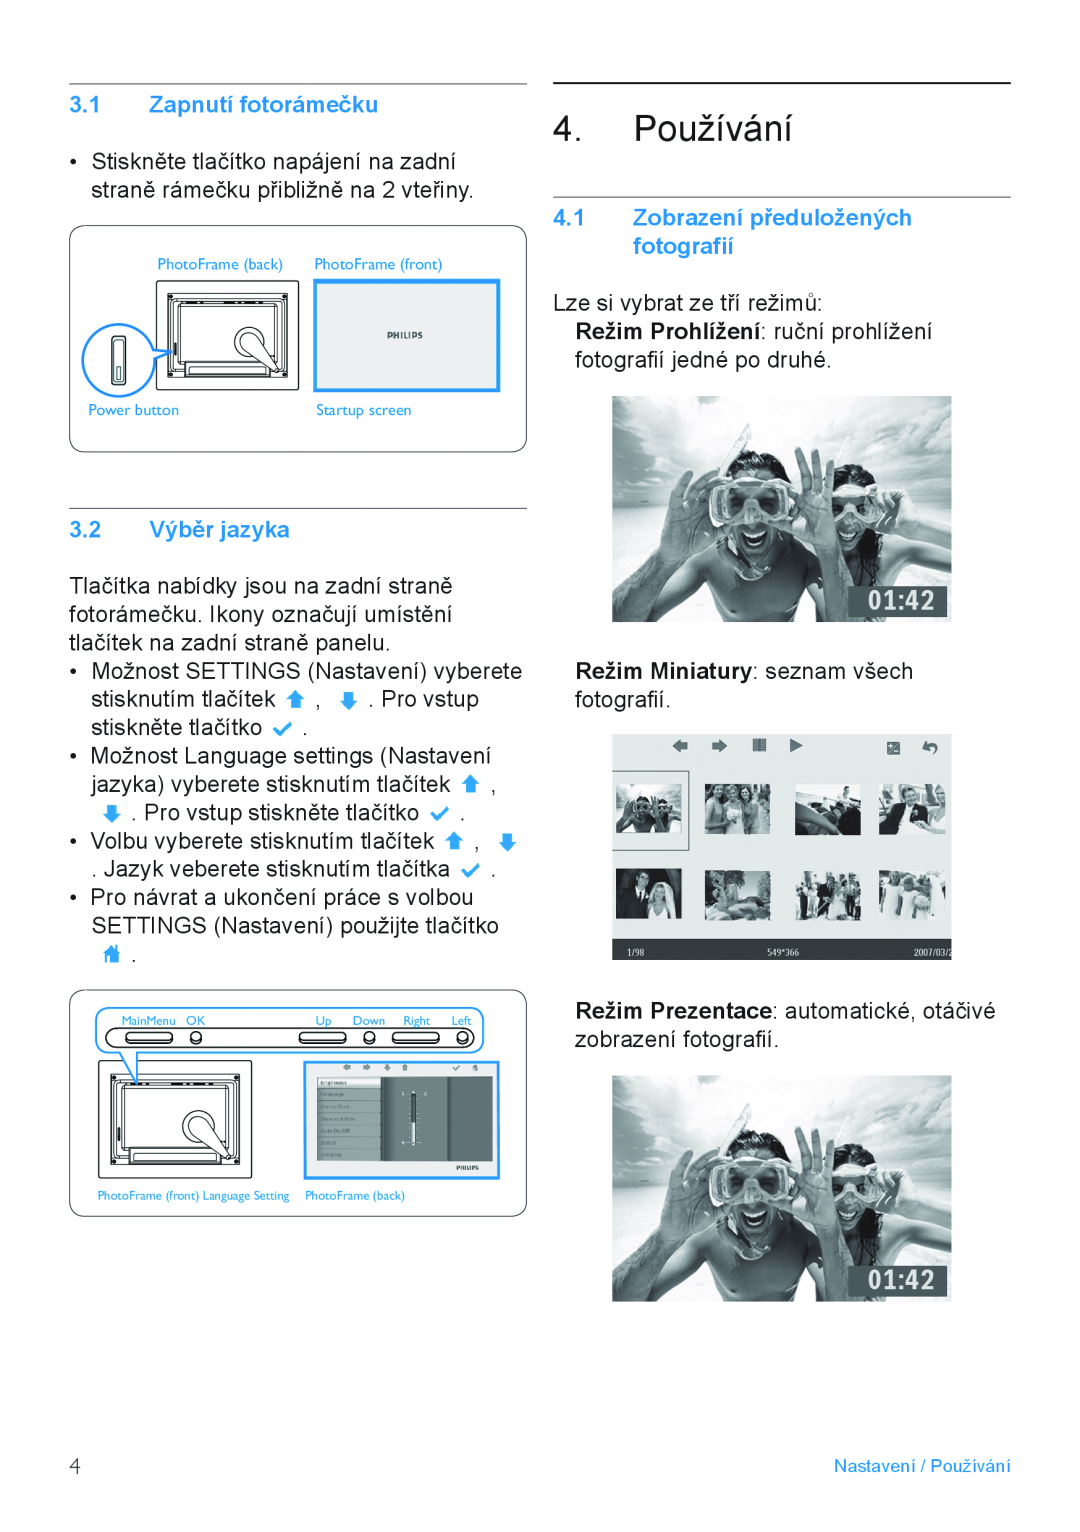 Philips 7FF2FPAS manual Používání, Zapnutí fotorámečku, 3.2 Výběr jazyka, Zobrazení předuložených fotografií 